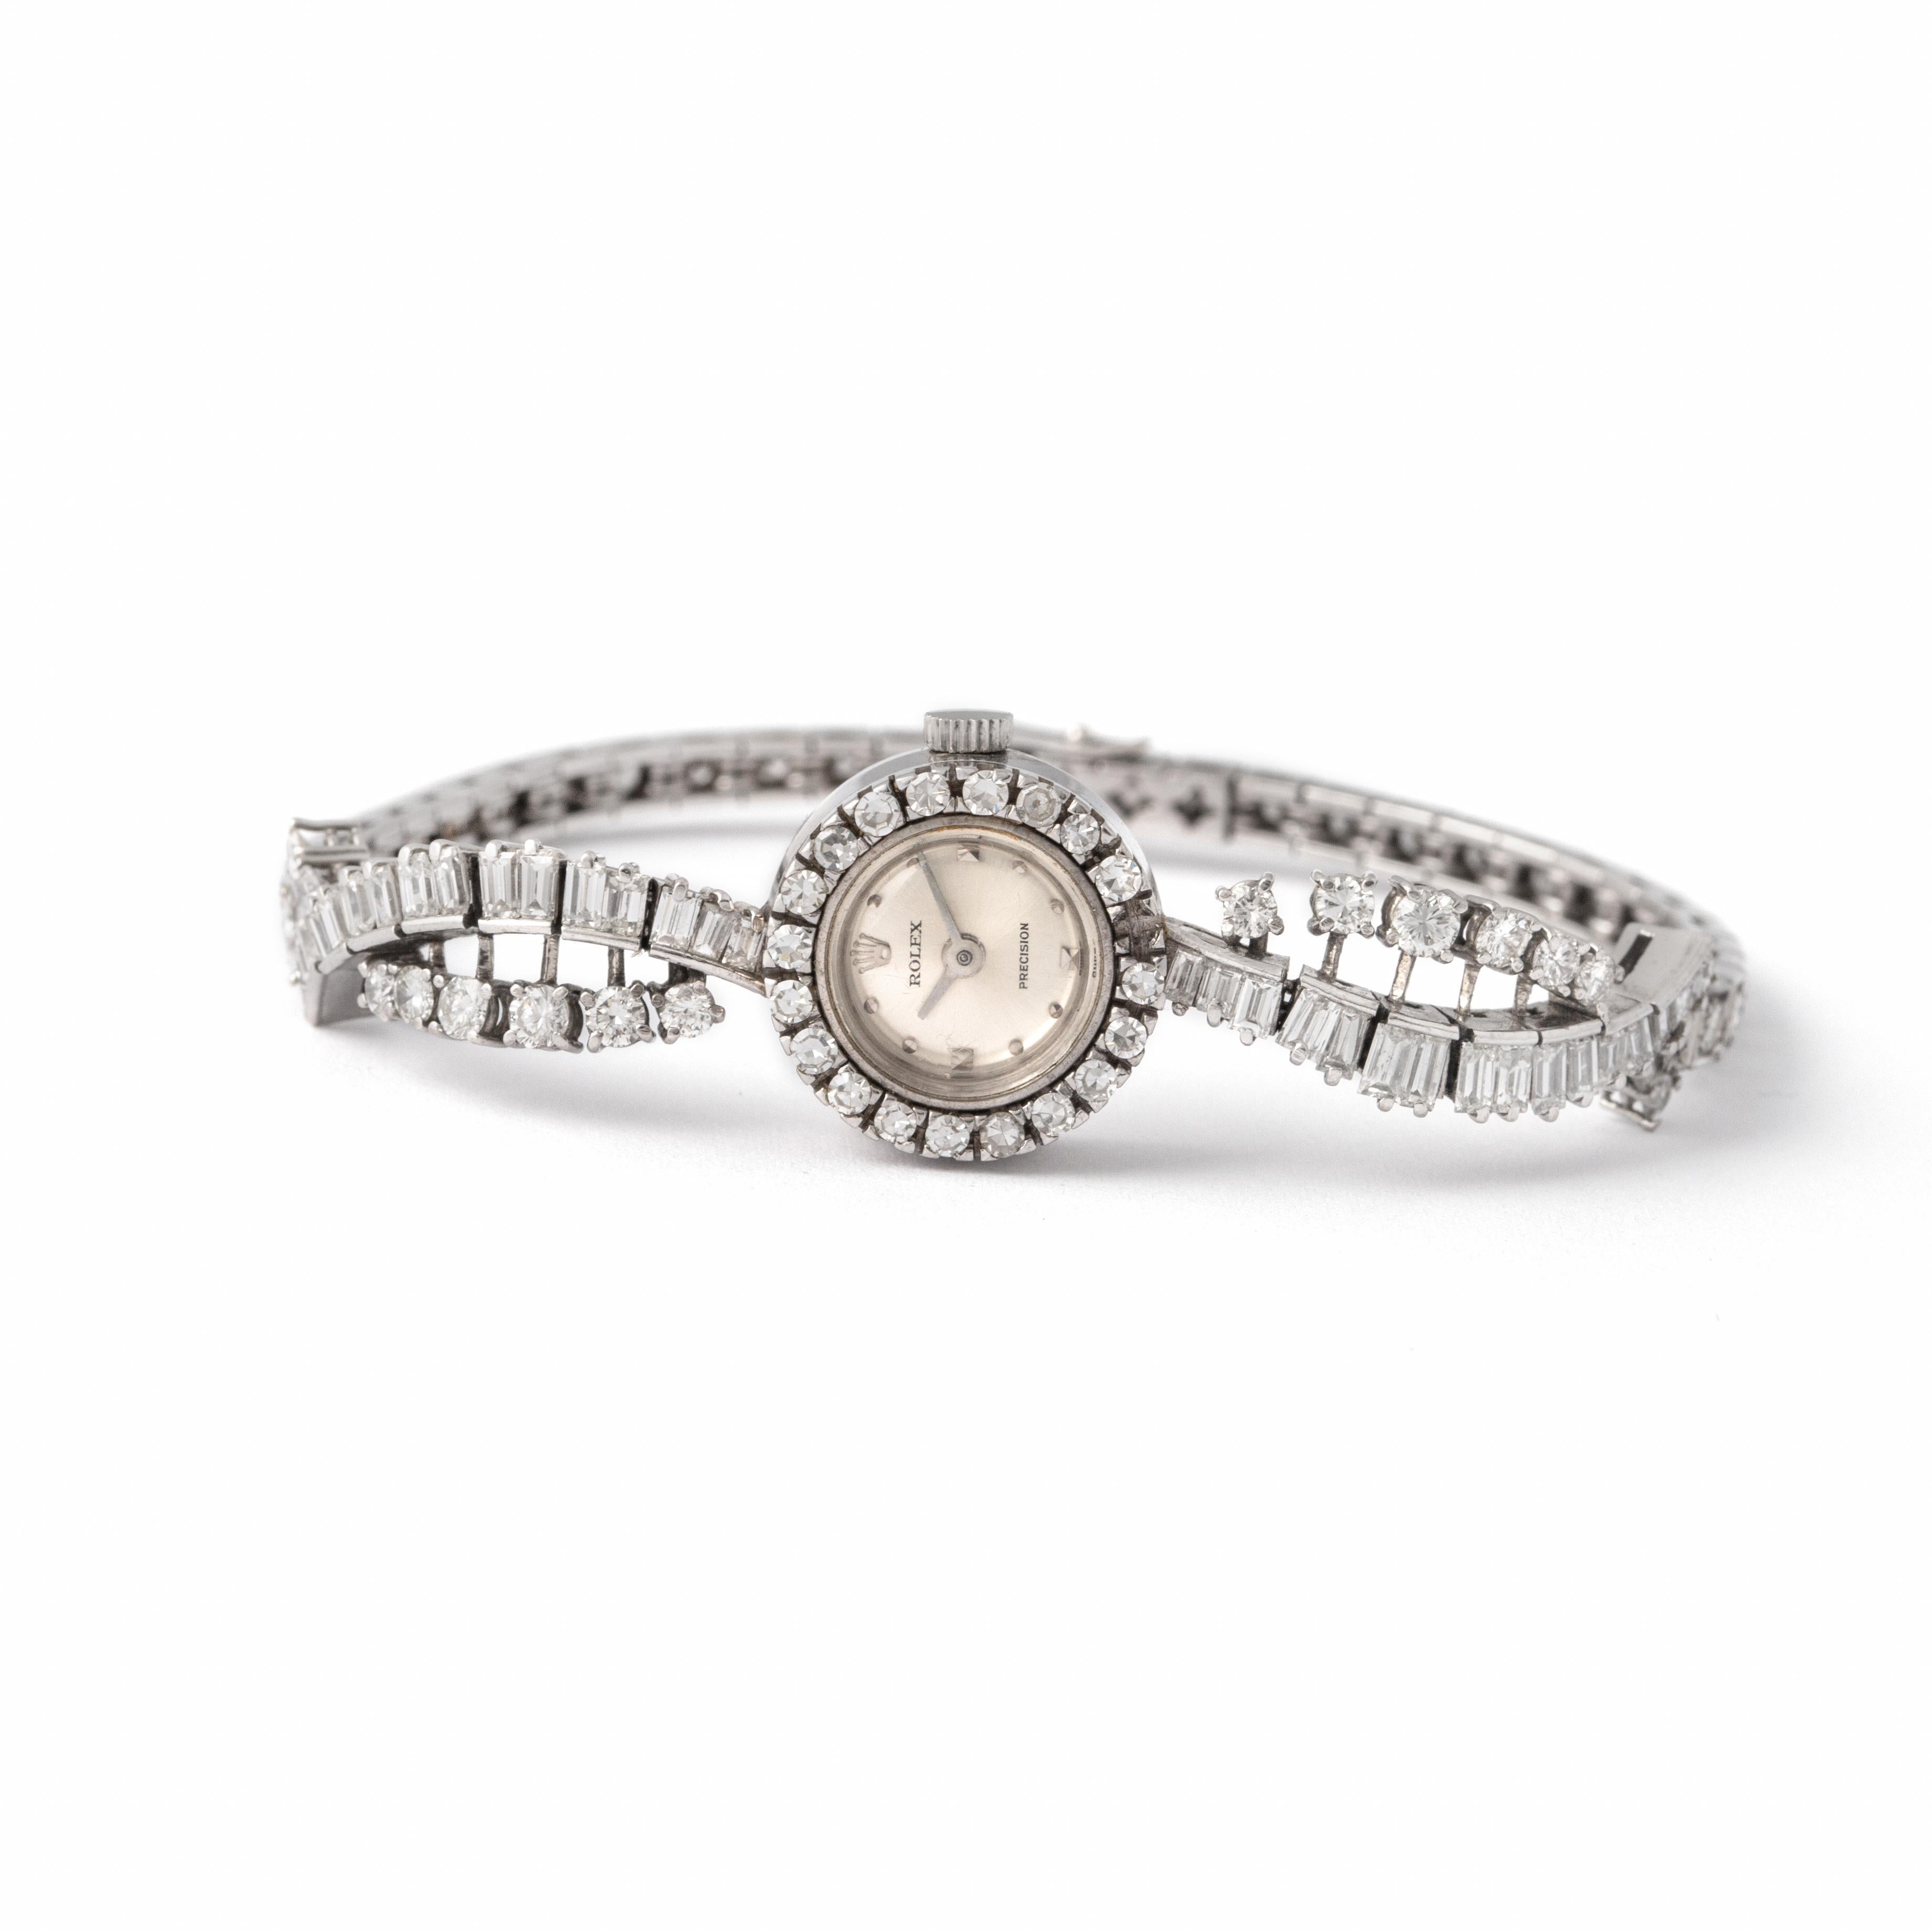 Rolex Montre-bracelet en or blanc 18 carats, diamants ronds et baguettes.
Vers 1950. Rolex. Numéroté. 
Précisions Rolex. 
Poids total brut : 22.12 gramme.

Nous ne garantissons pas le fonctionnement de cette montre.